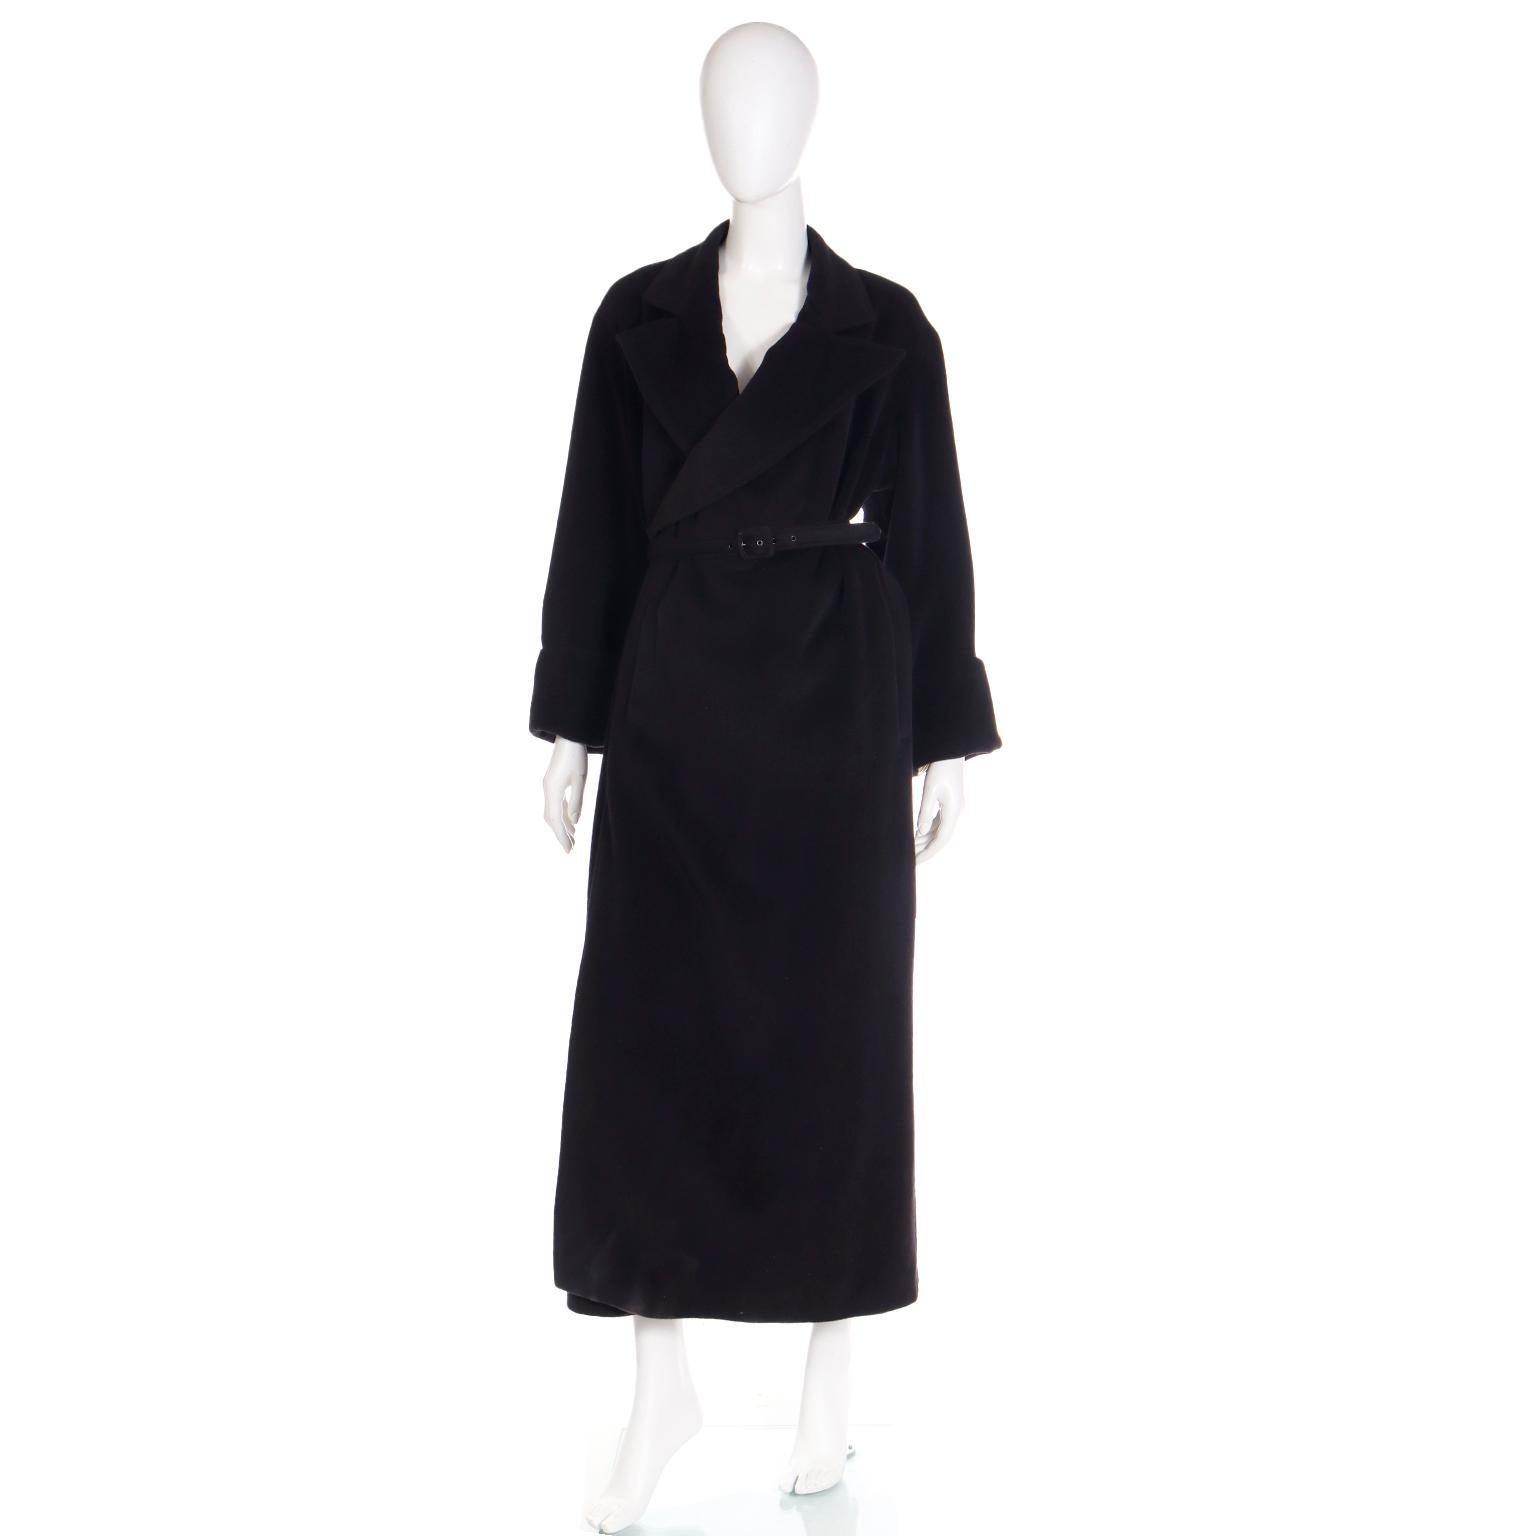 Ce manteau noir vintage 2000 Jean Paul Gaultier Classique est une pièce facile à porter et à incorporer dans une garde-robe moderne. Ce manteau se porte sans effort et il est livré avec sa ceinture d'origine pour ajouter plus de structure et un peu